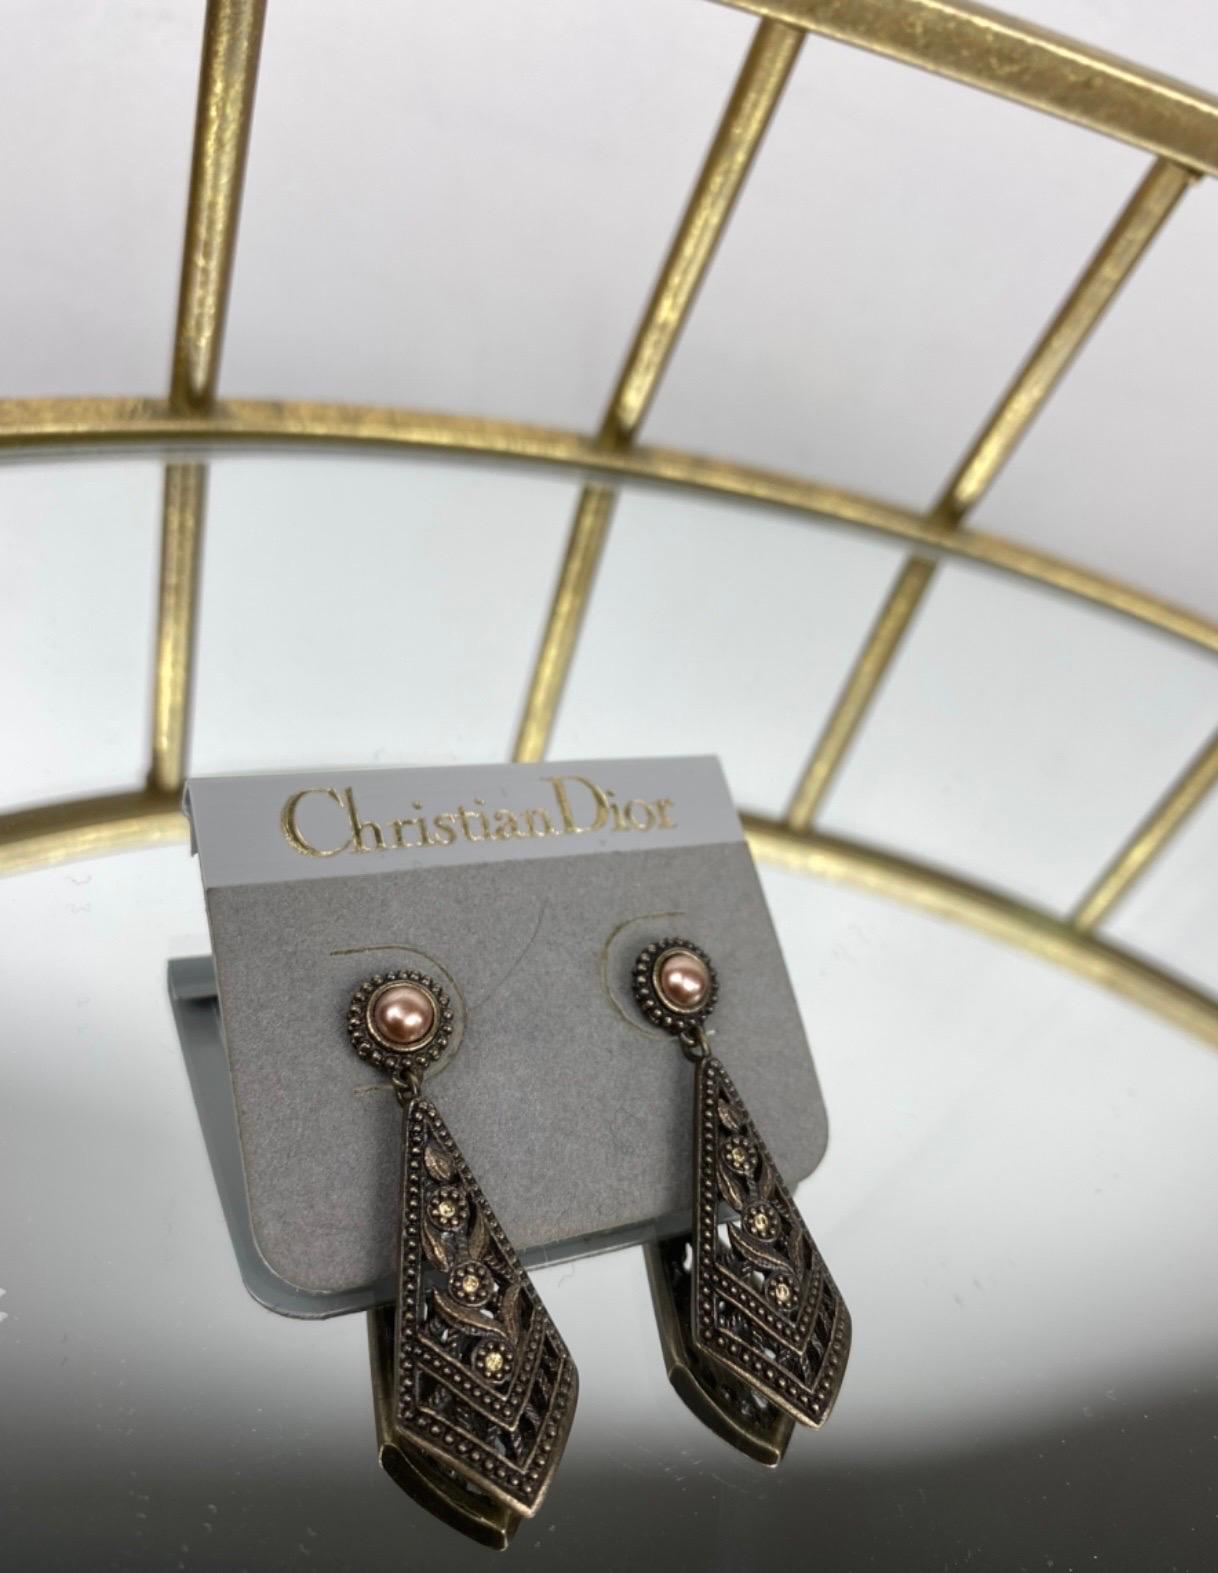 Vintage Christian Dior Ohrringe, aus bronze/silberfarbenem Metall mit roségoldfarbenen Perlen am Ohrring. Maße: Länge 4cm, maximale Breite 1,5cm, in sehr gutem Zustand. Neu.